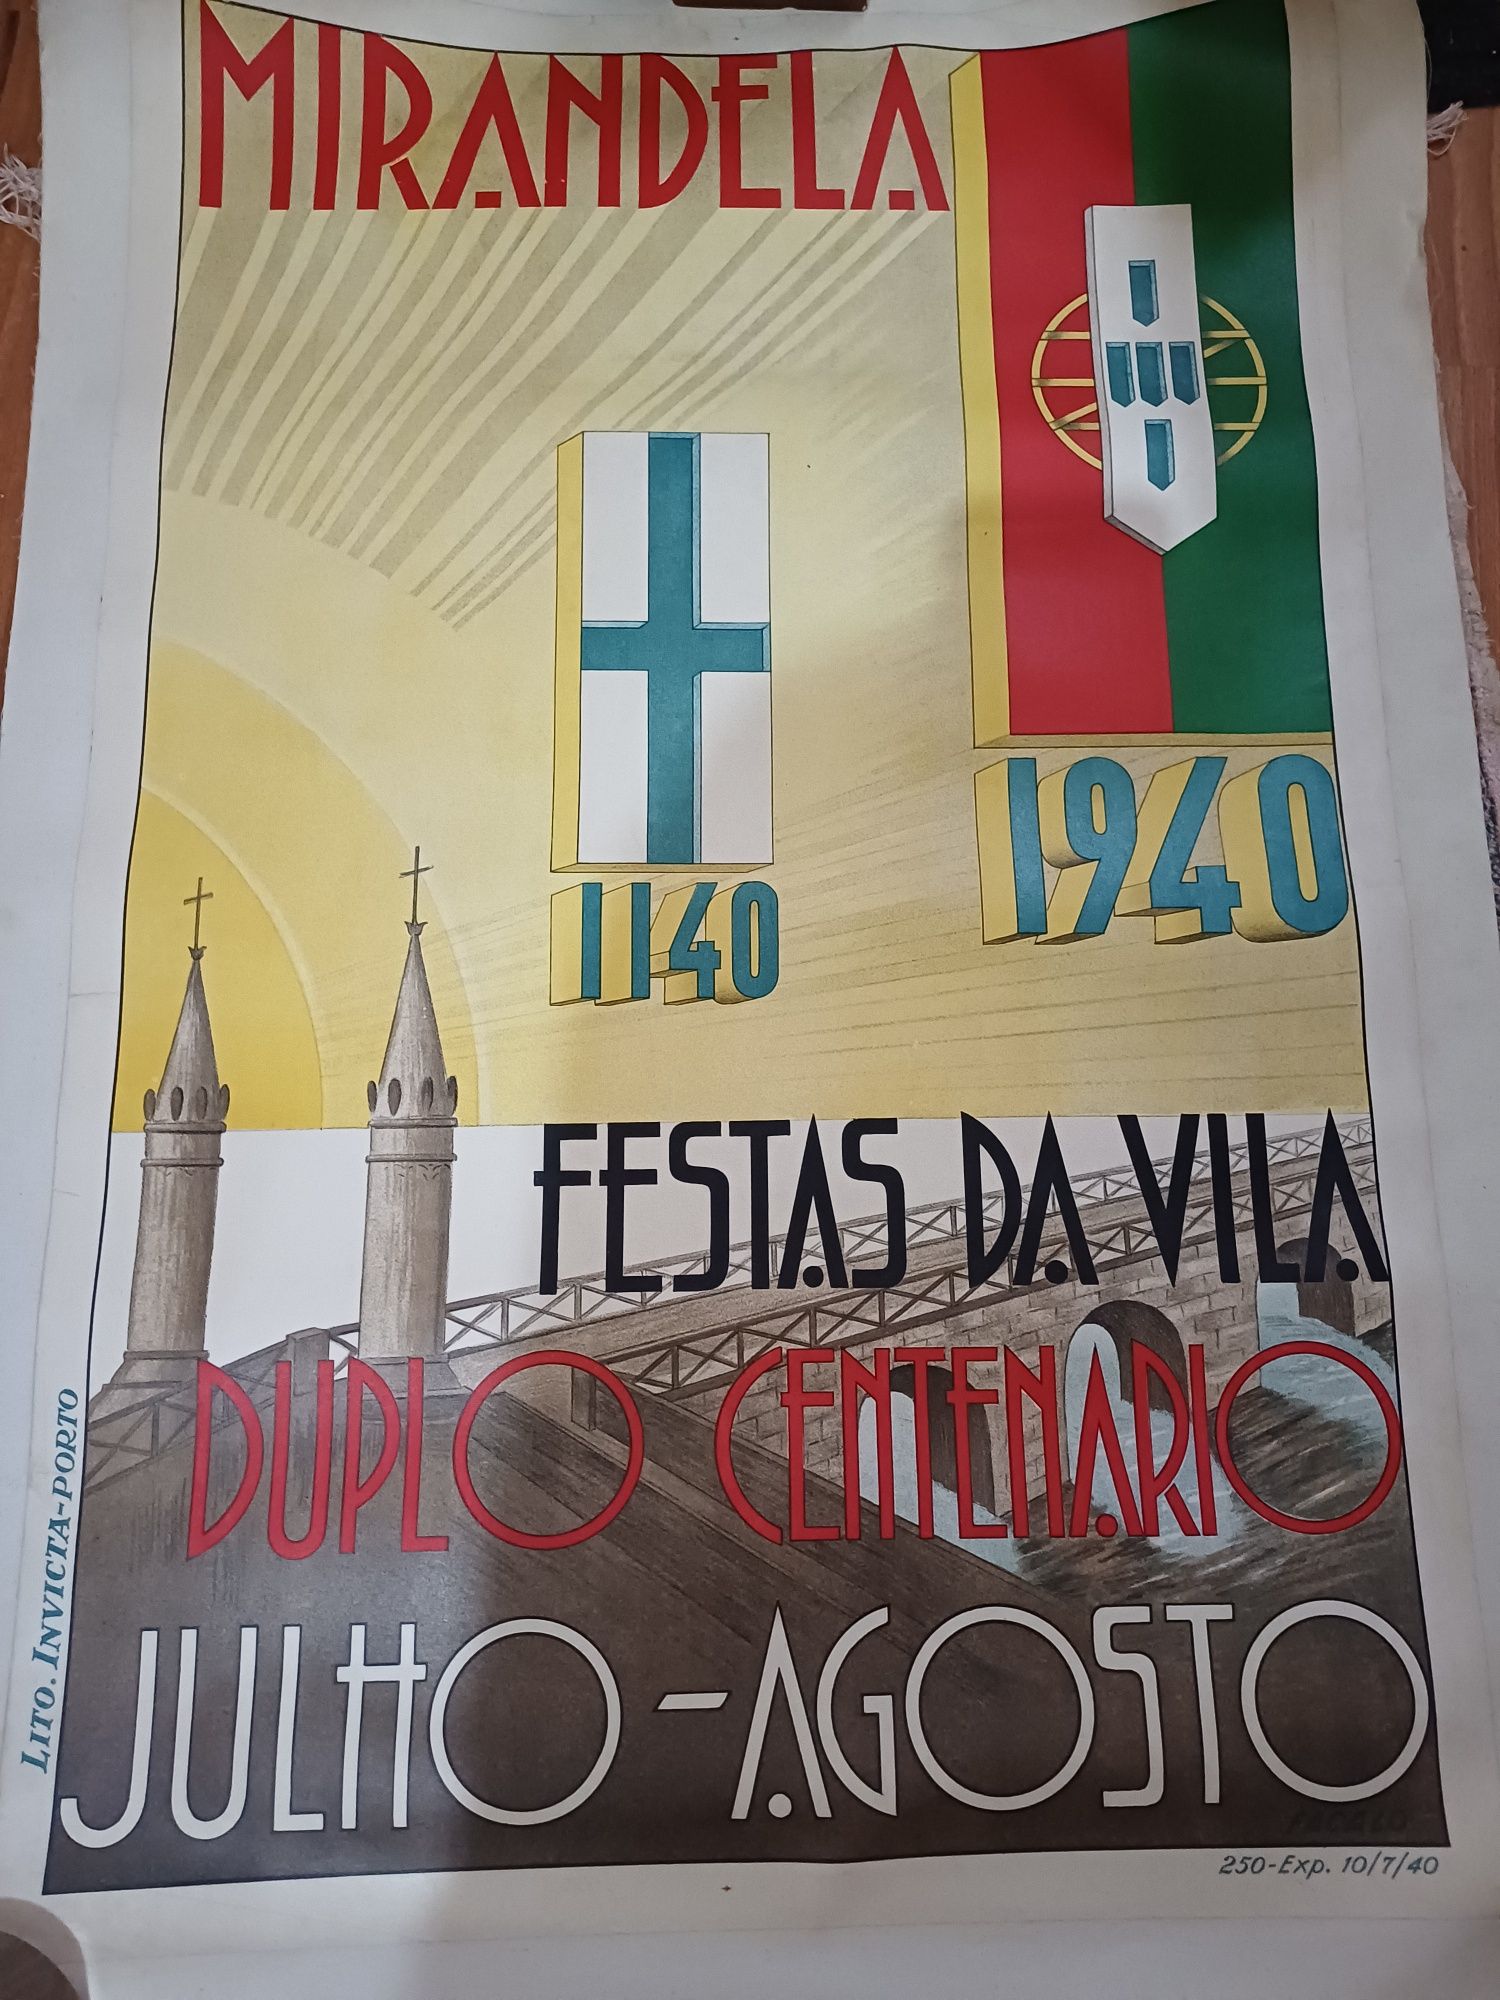 Cartaz das festas Mirandela. Festas da Vila